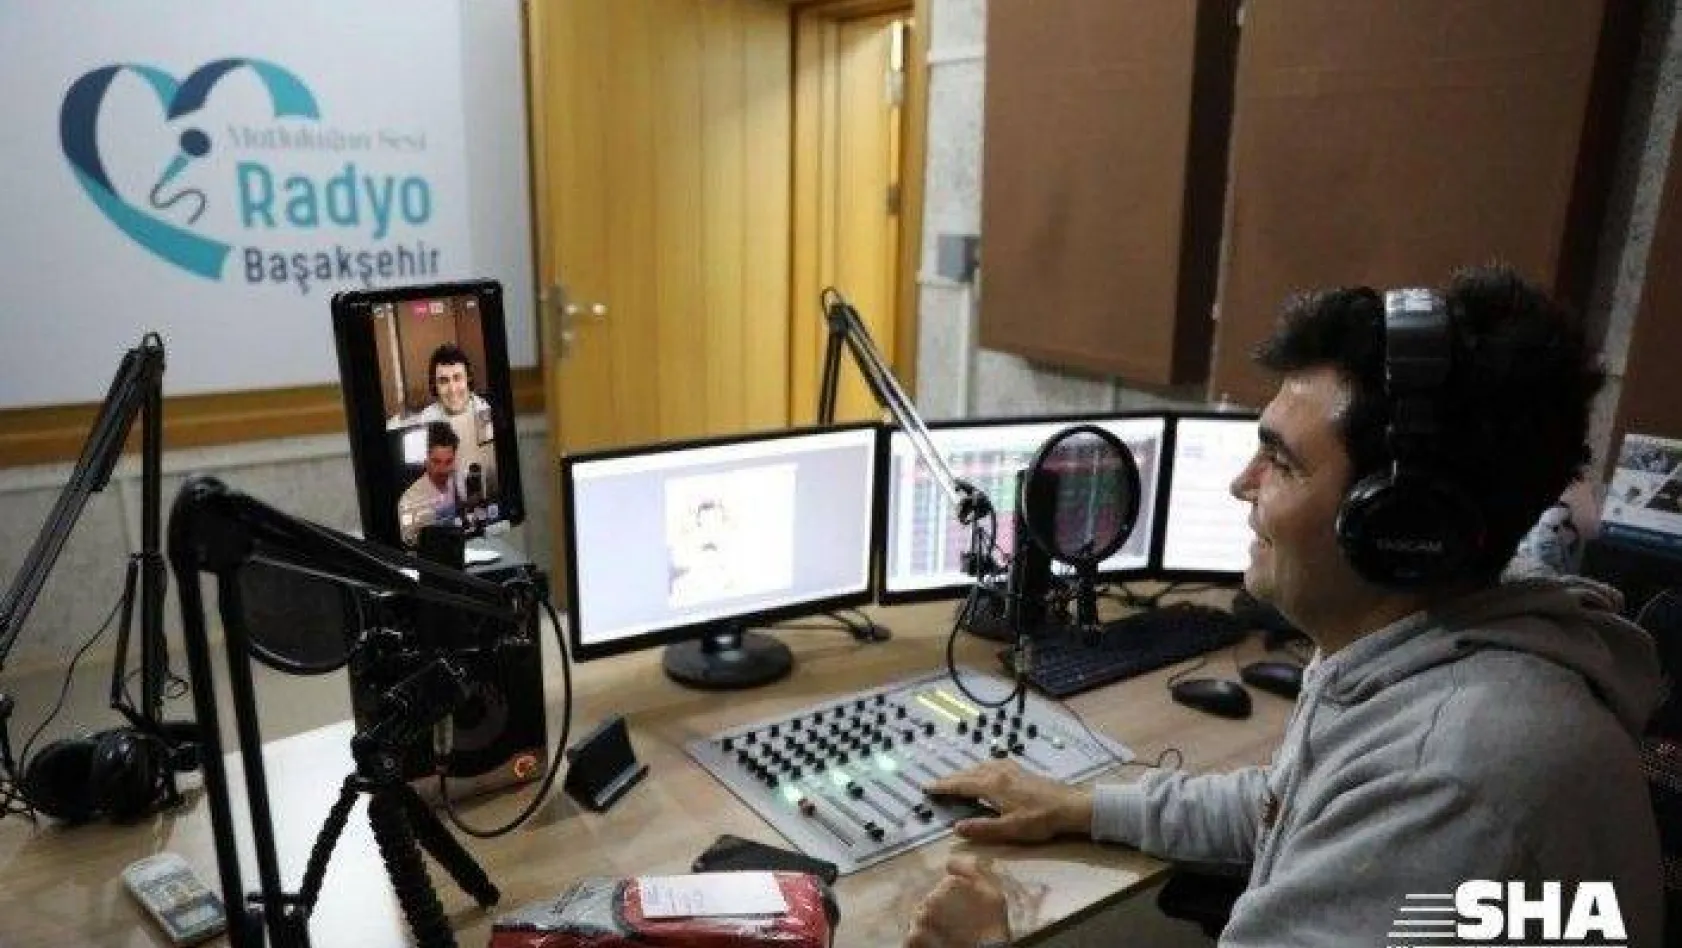 Radyo Başakşehir mutluluk sunuyor